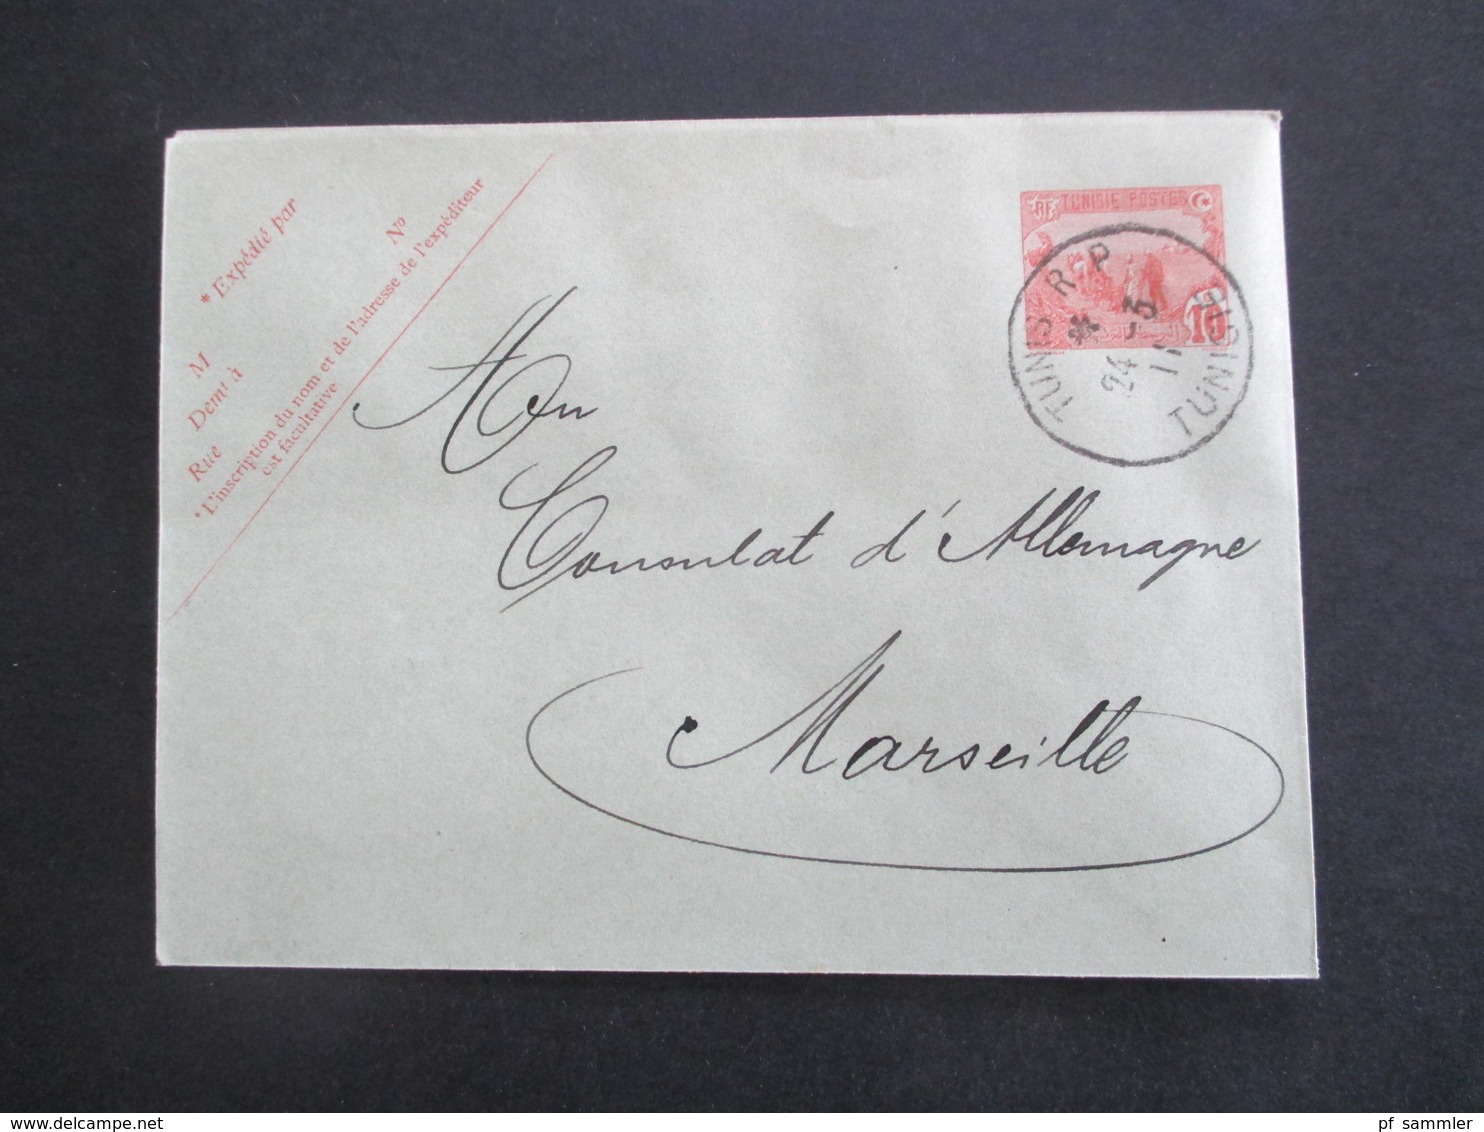 Kolonie Tuniesien 1910 / 1911 Ganzsachen / Postkarten / Umschläge / 1x Lettre Expres alle ans Deutsche Konsulat in Tunis